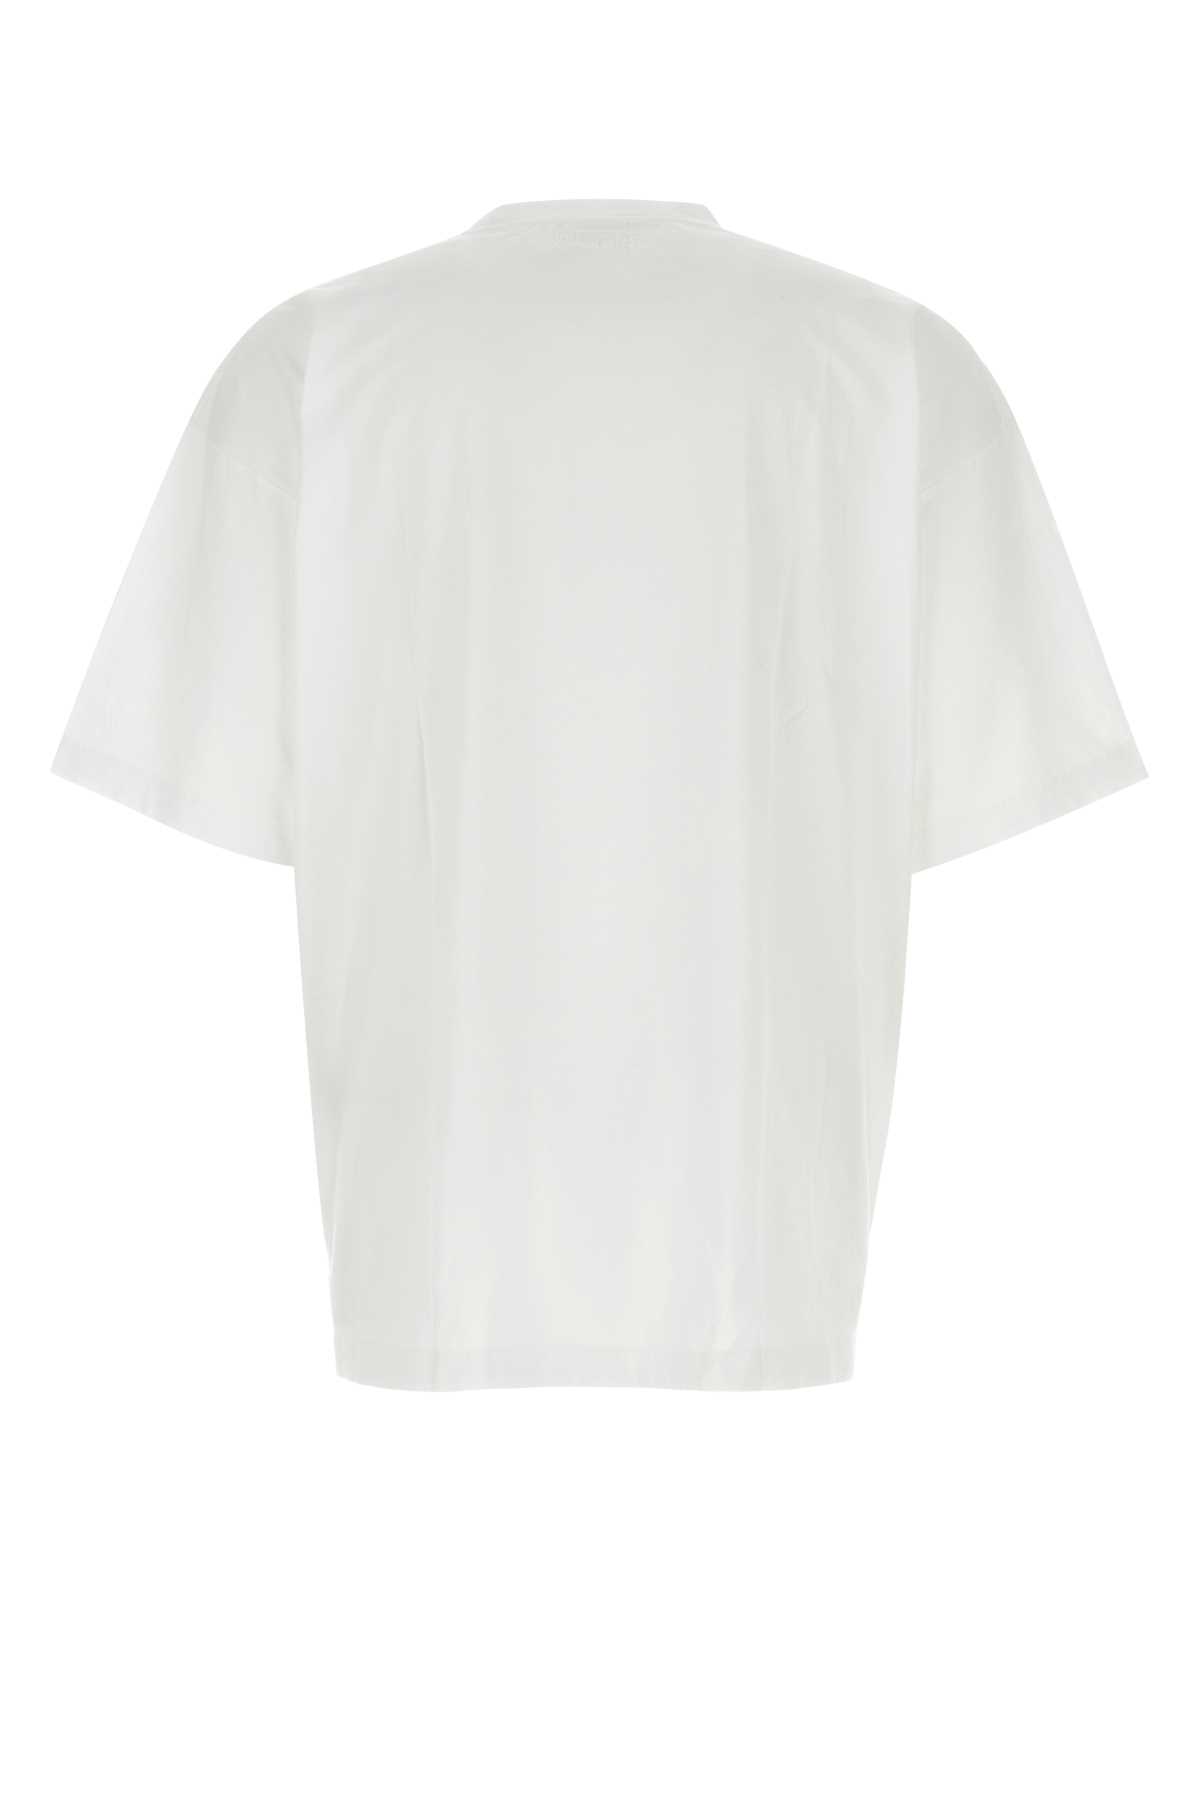 Shop Vetements White Cotton Oversize T-shirt